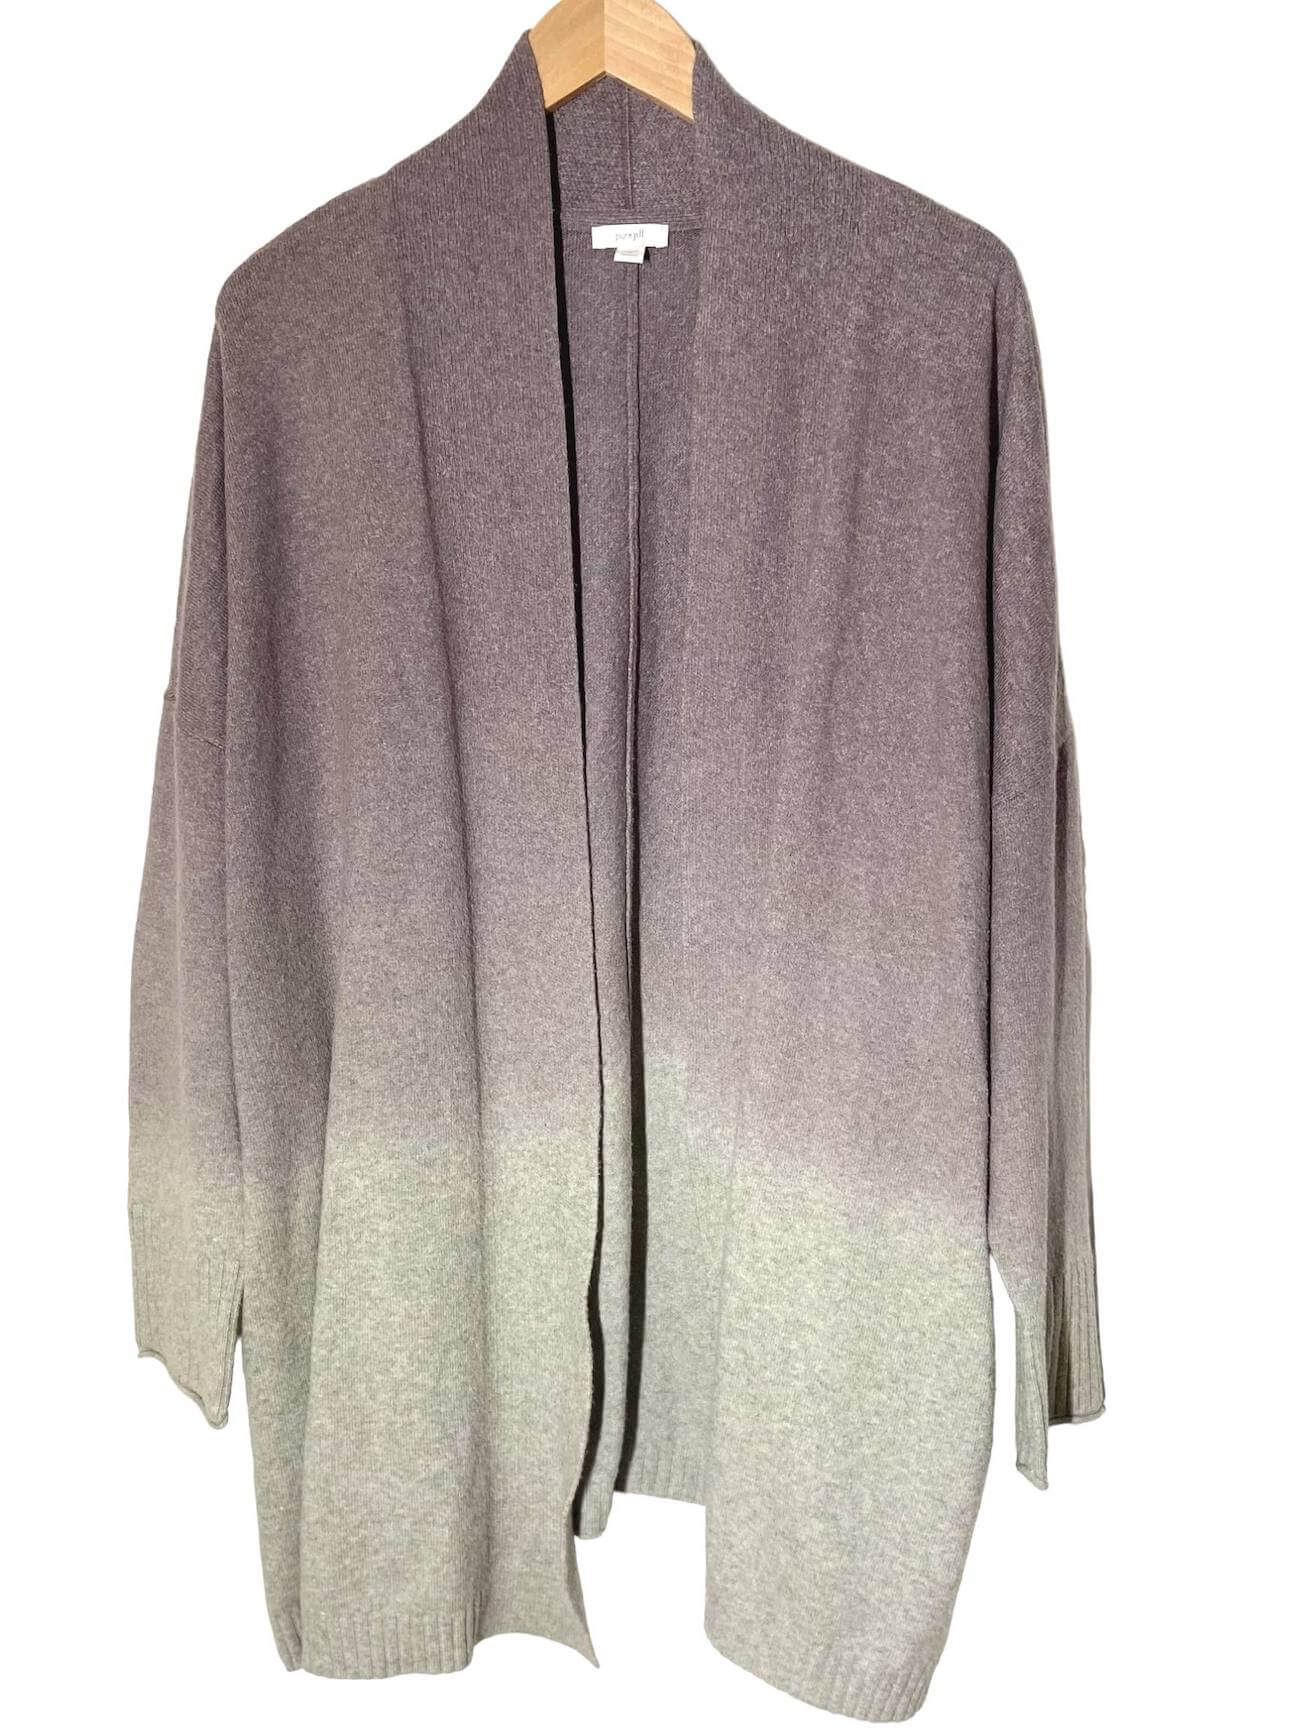 https://indigotones.com/cdn/shop/products/soft-summer-purejill-ombre-open-cardigan-sweater_2000x.jpg?v=1666311150